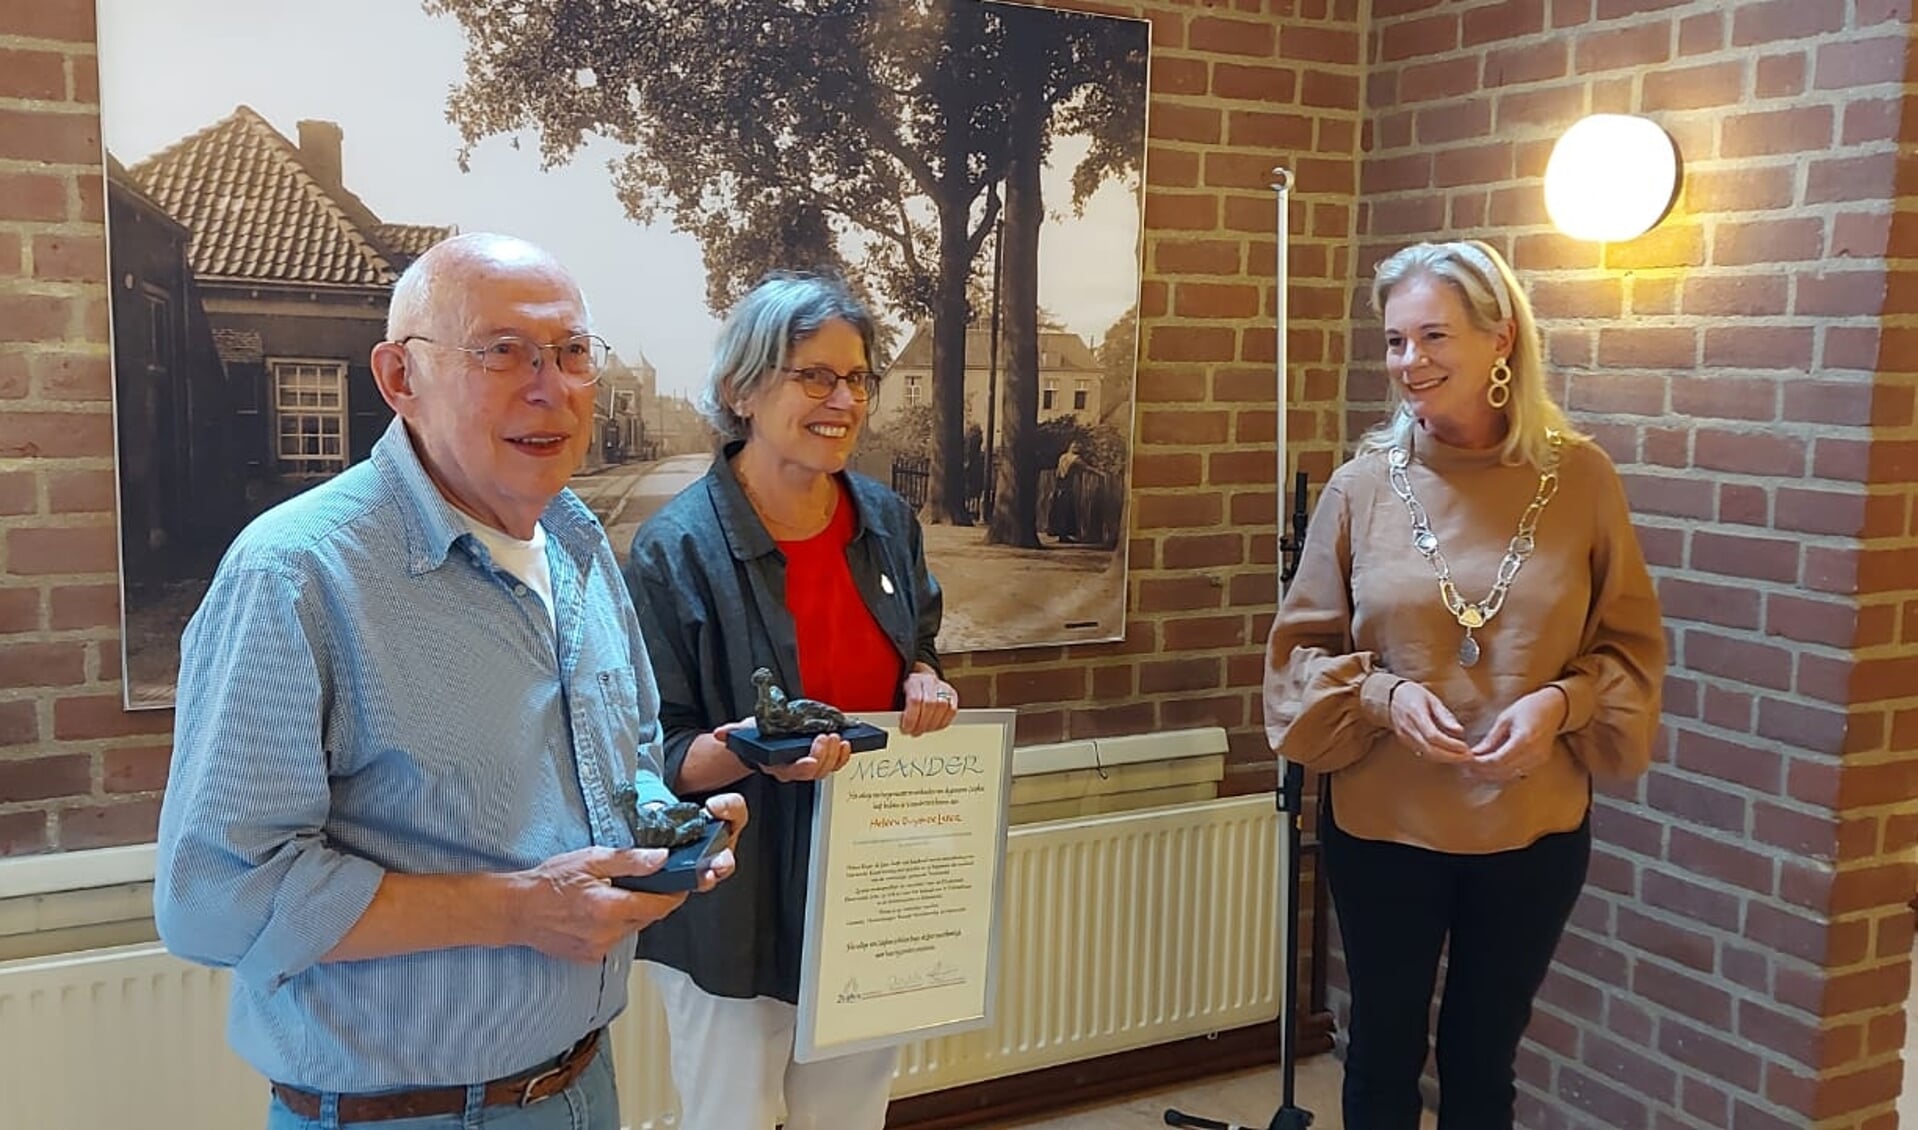 Burgemeester Annemieke Vermeulen heeft de Meander uitgereikt aan Heleen Buijs-de Later en Frans van Uem. Foto: PR